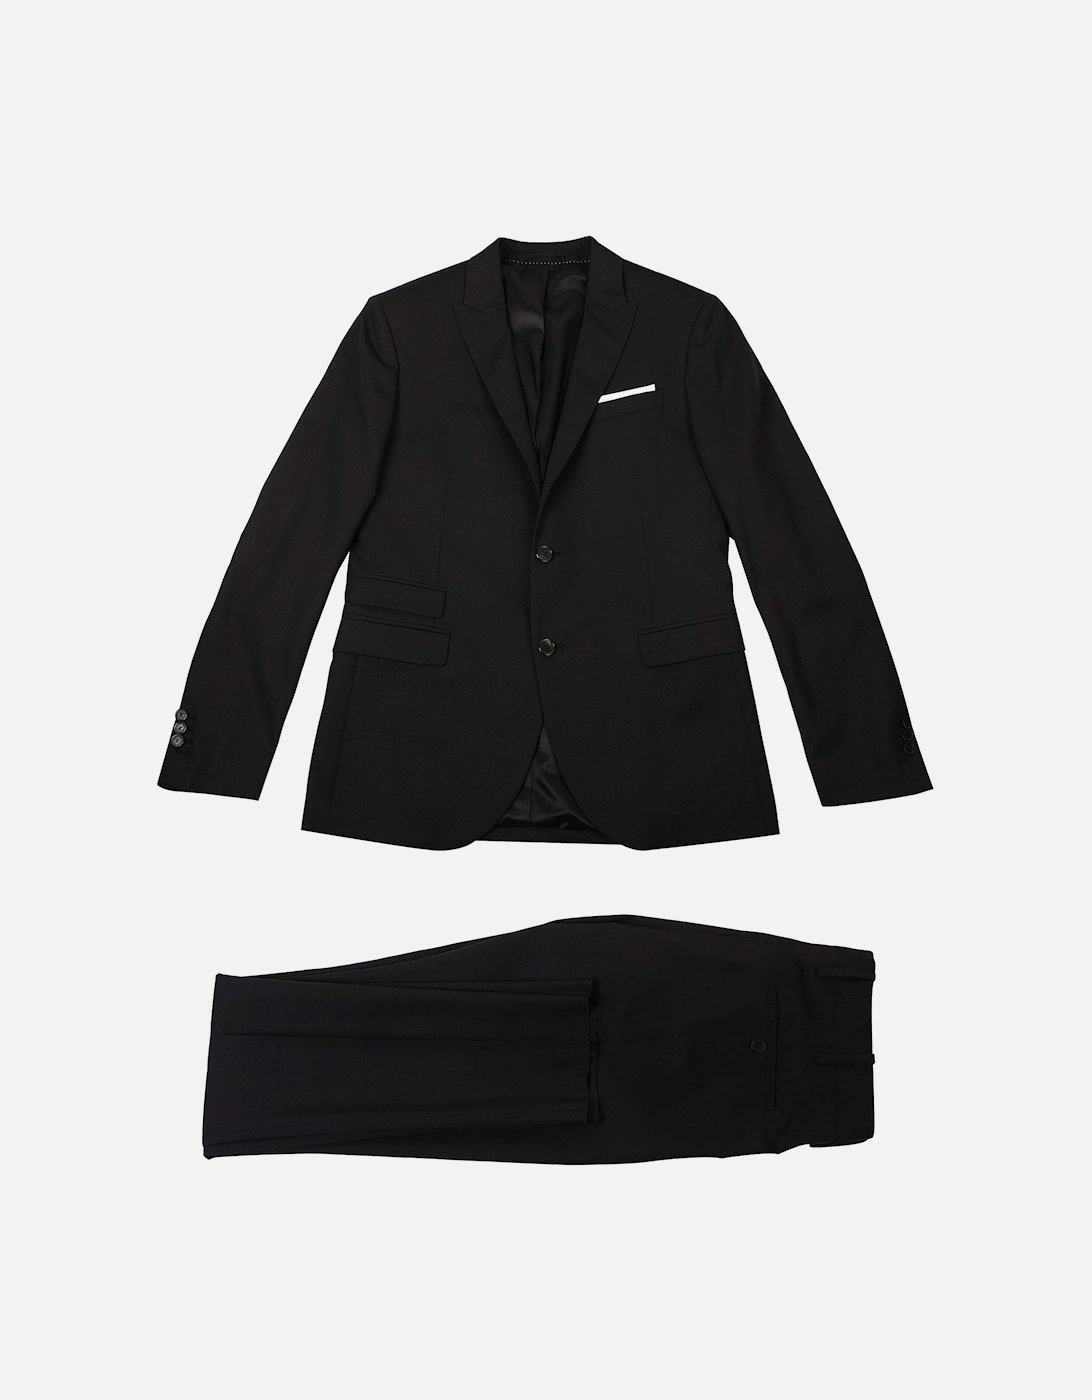 Men's Peak Lapel Formal Two Piece Suit Black, 2 of 1